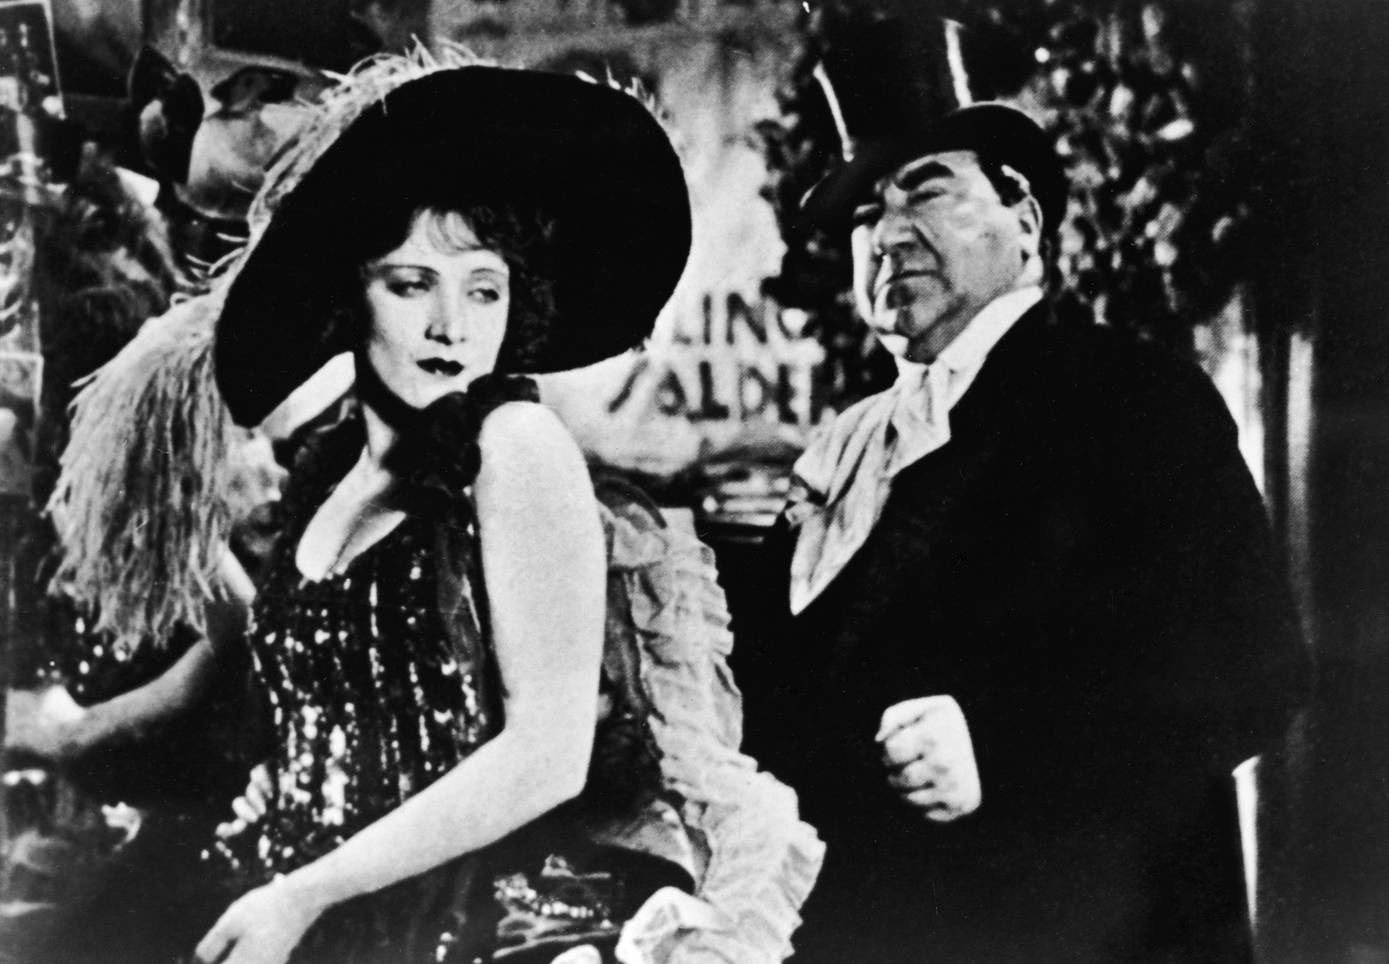 Marlene Dietrich and Kurt Gerron in the "Blue Angel".